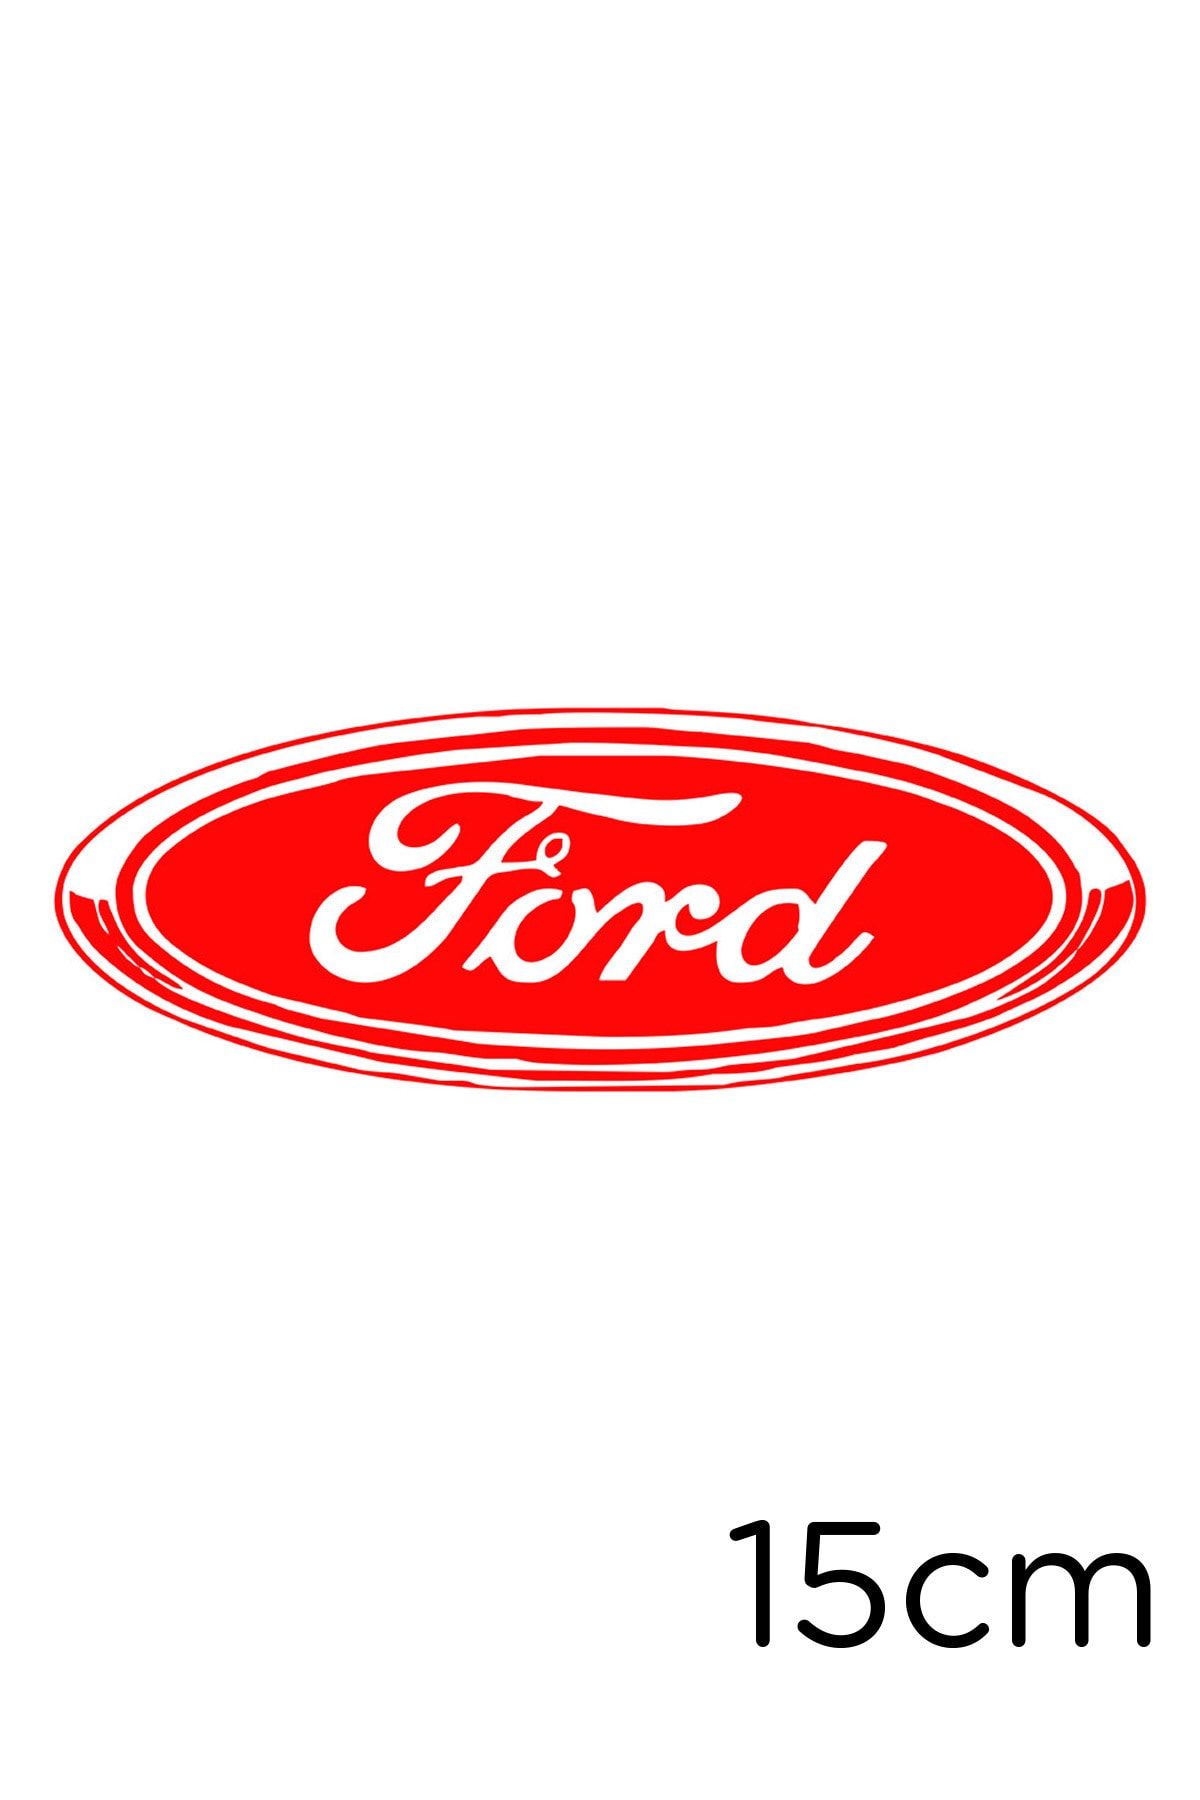 New Jargon Ford Yazısı Ve Logosu Sticker Yapıştırma 15cm - Kırmızı